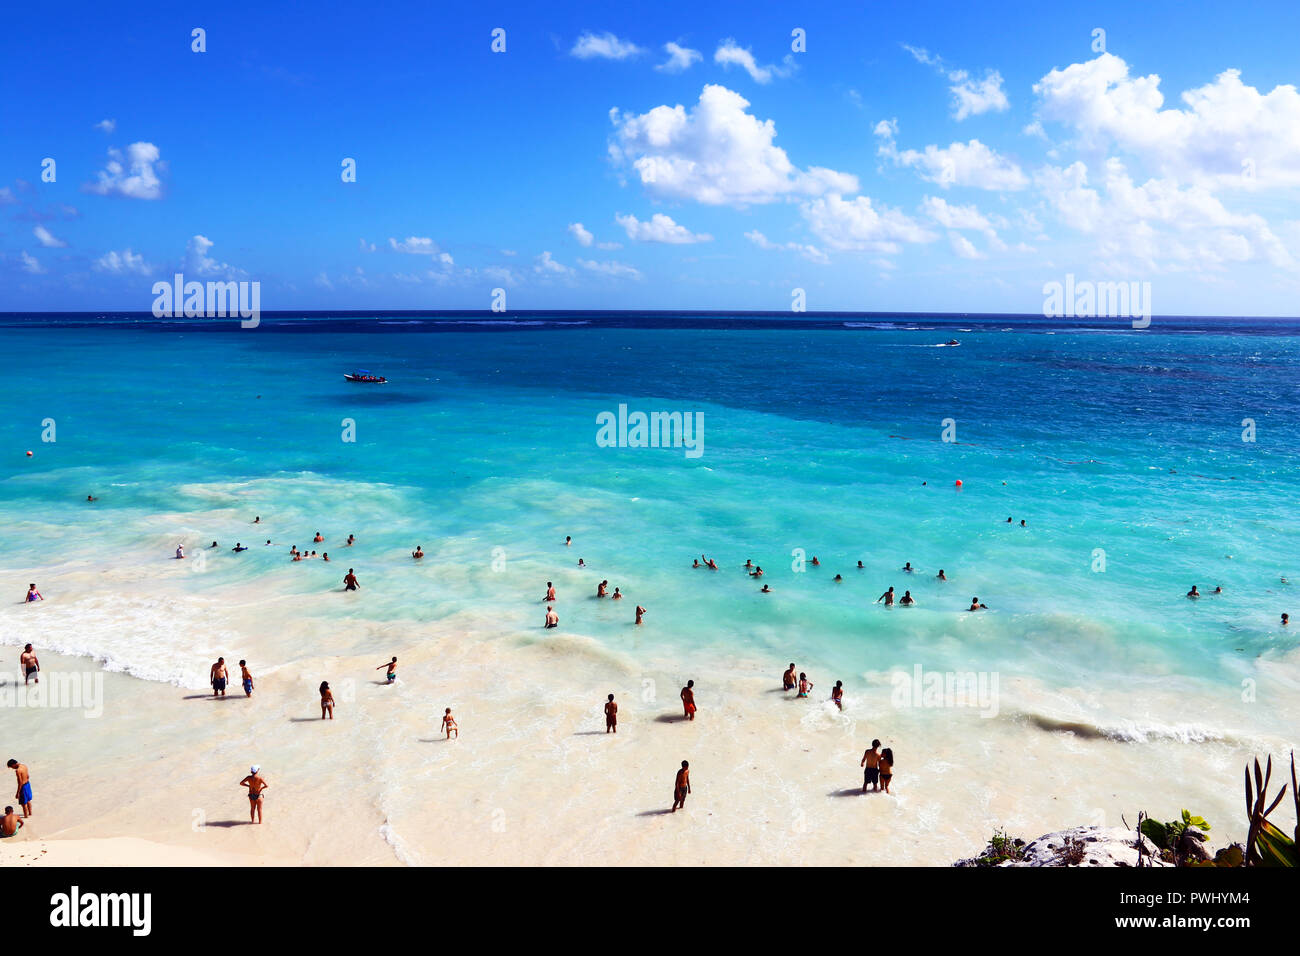 La plage de Tulum, pris près de Cancún (Mexique) Banque D'Images